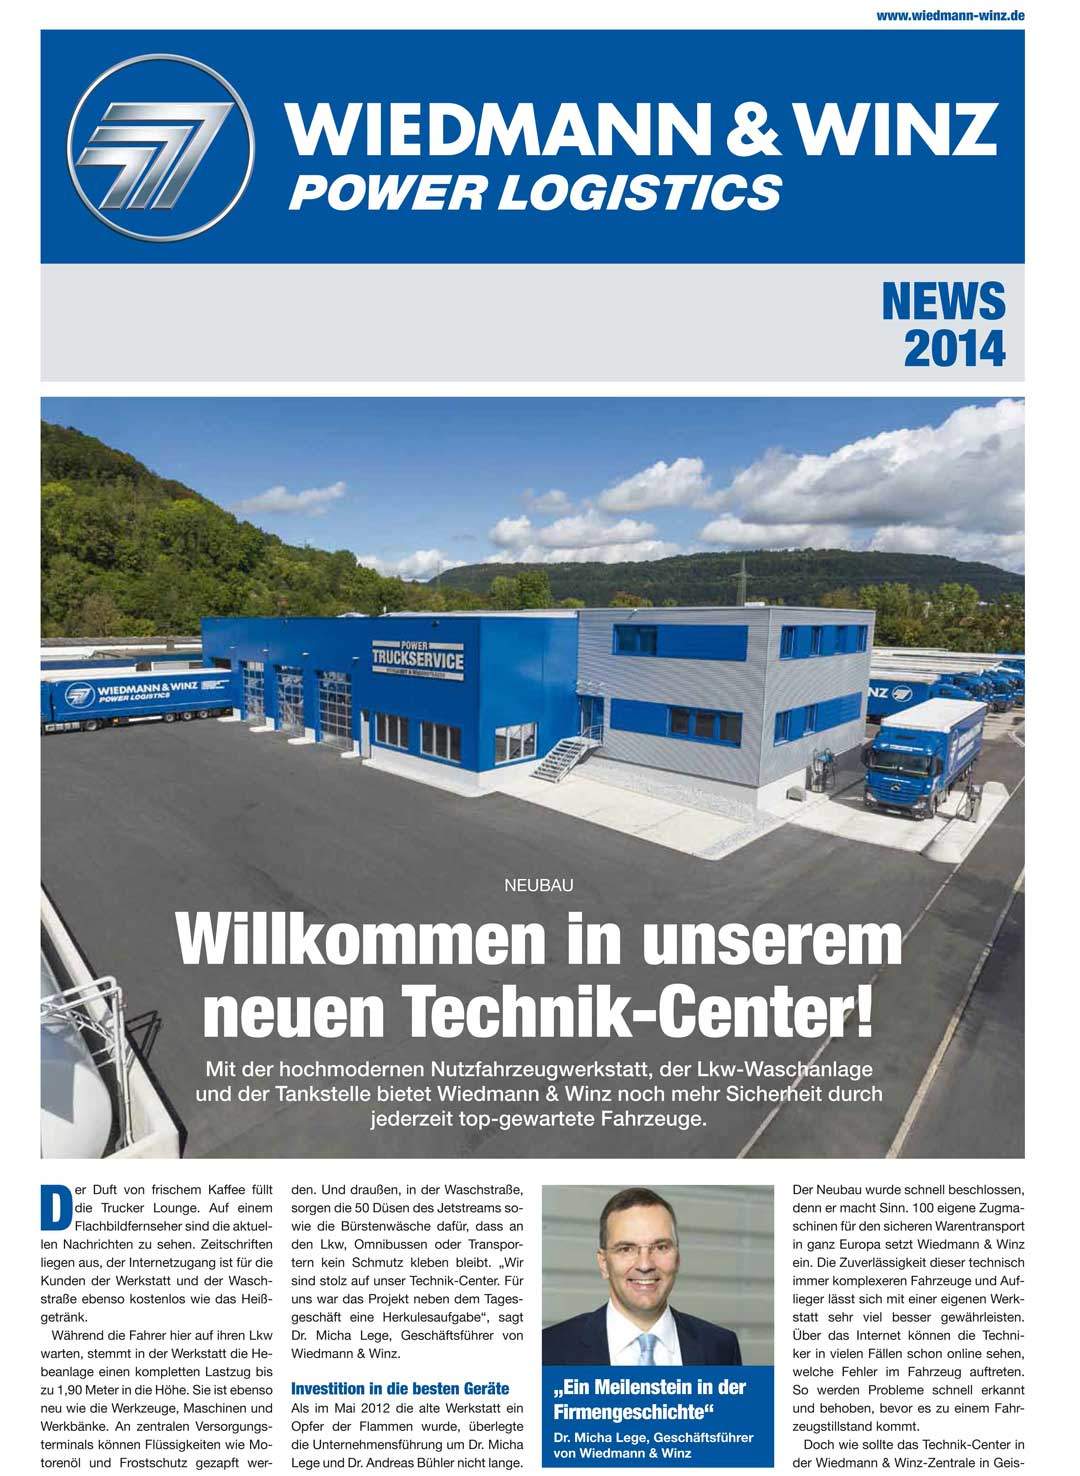 Technik-Center